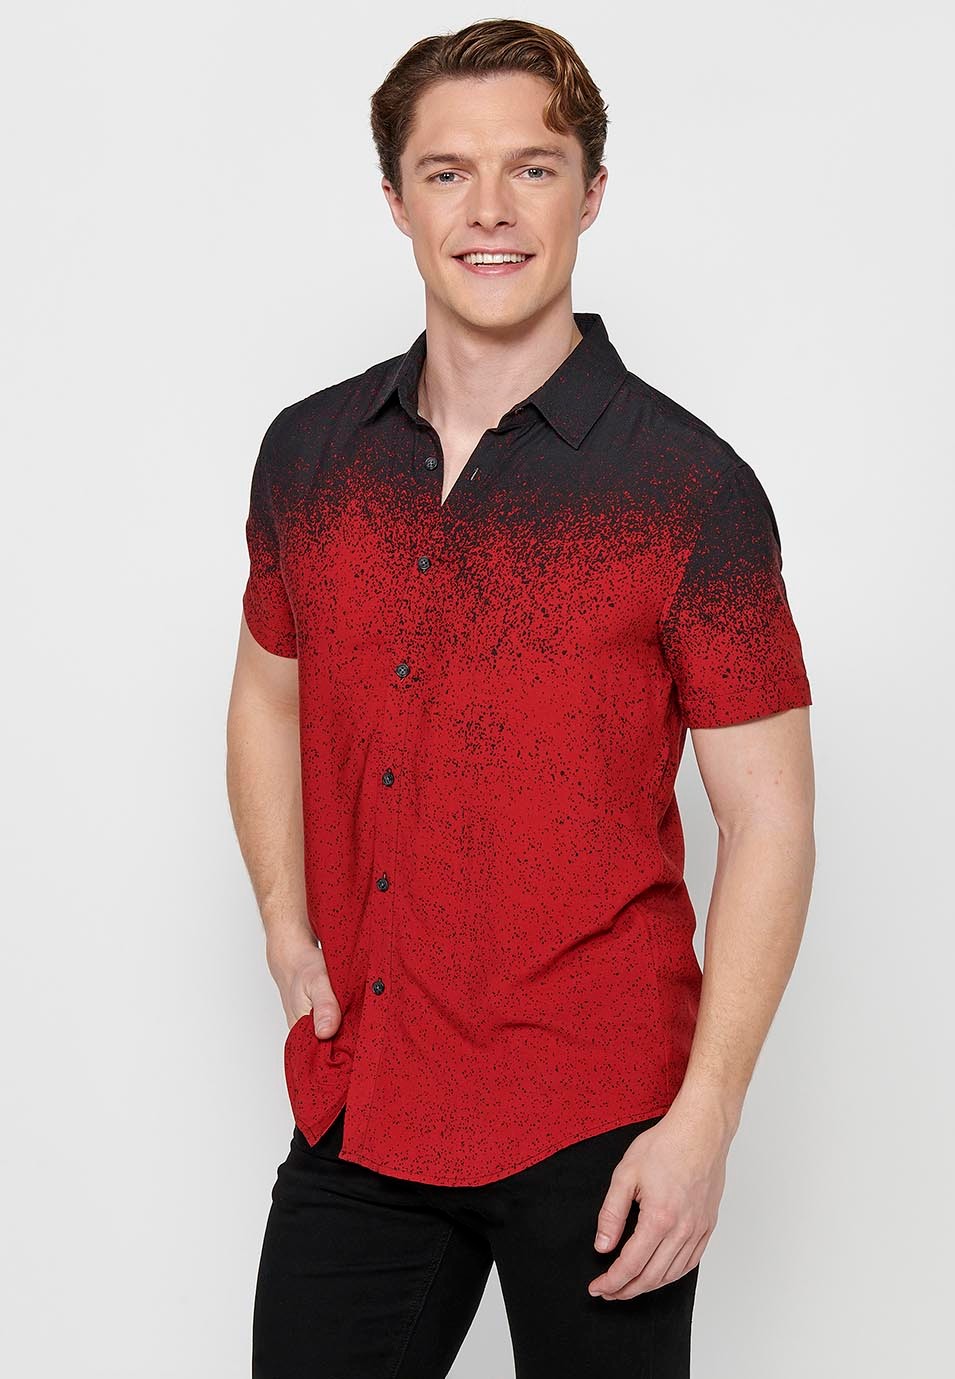 Camisa manga corta en degradado rojo para hombres